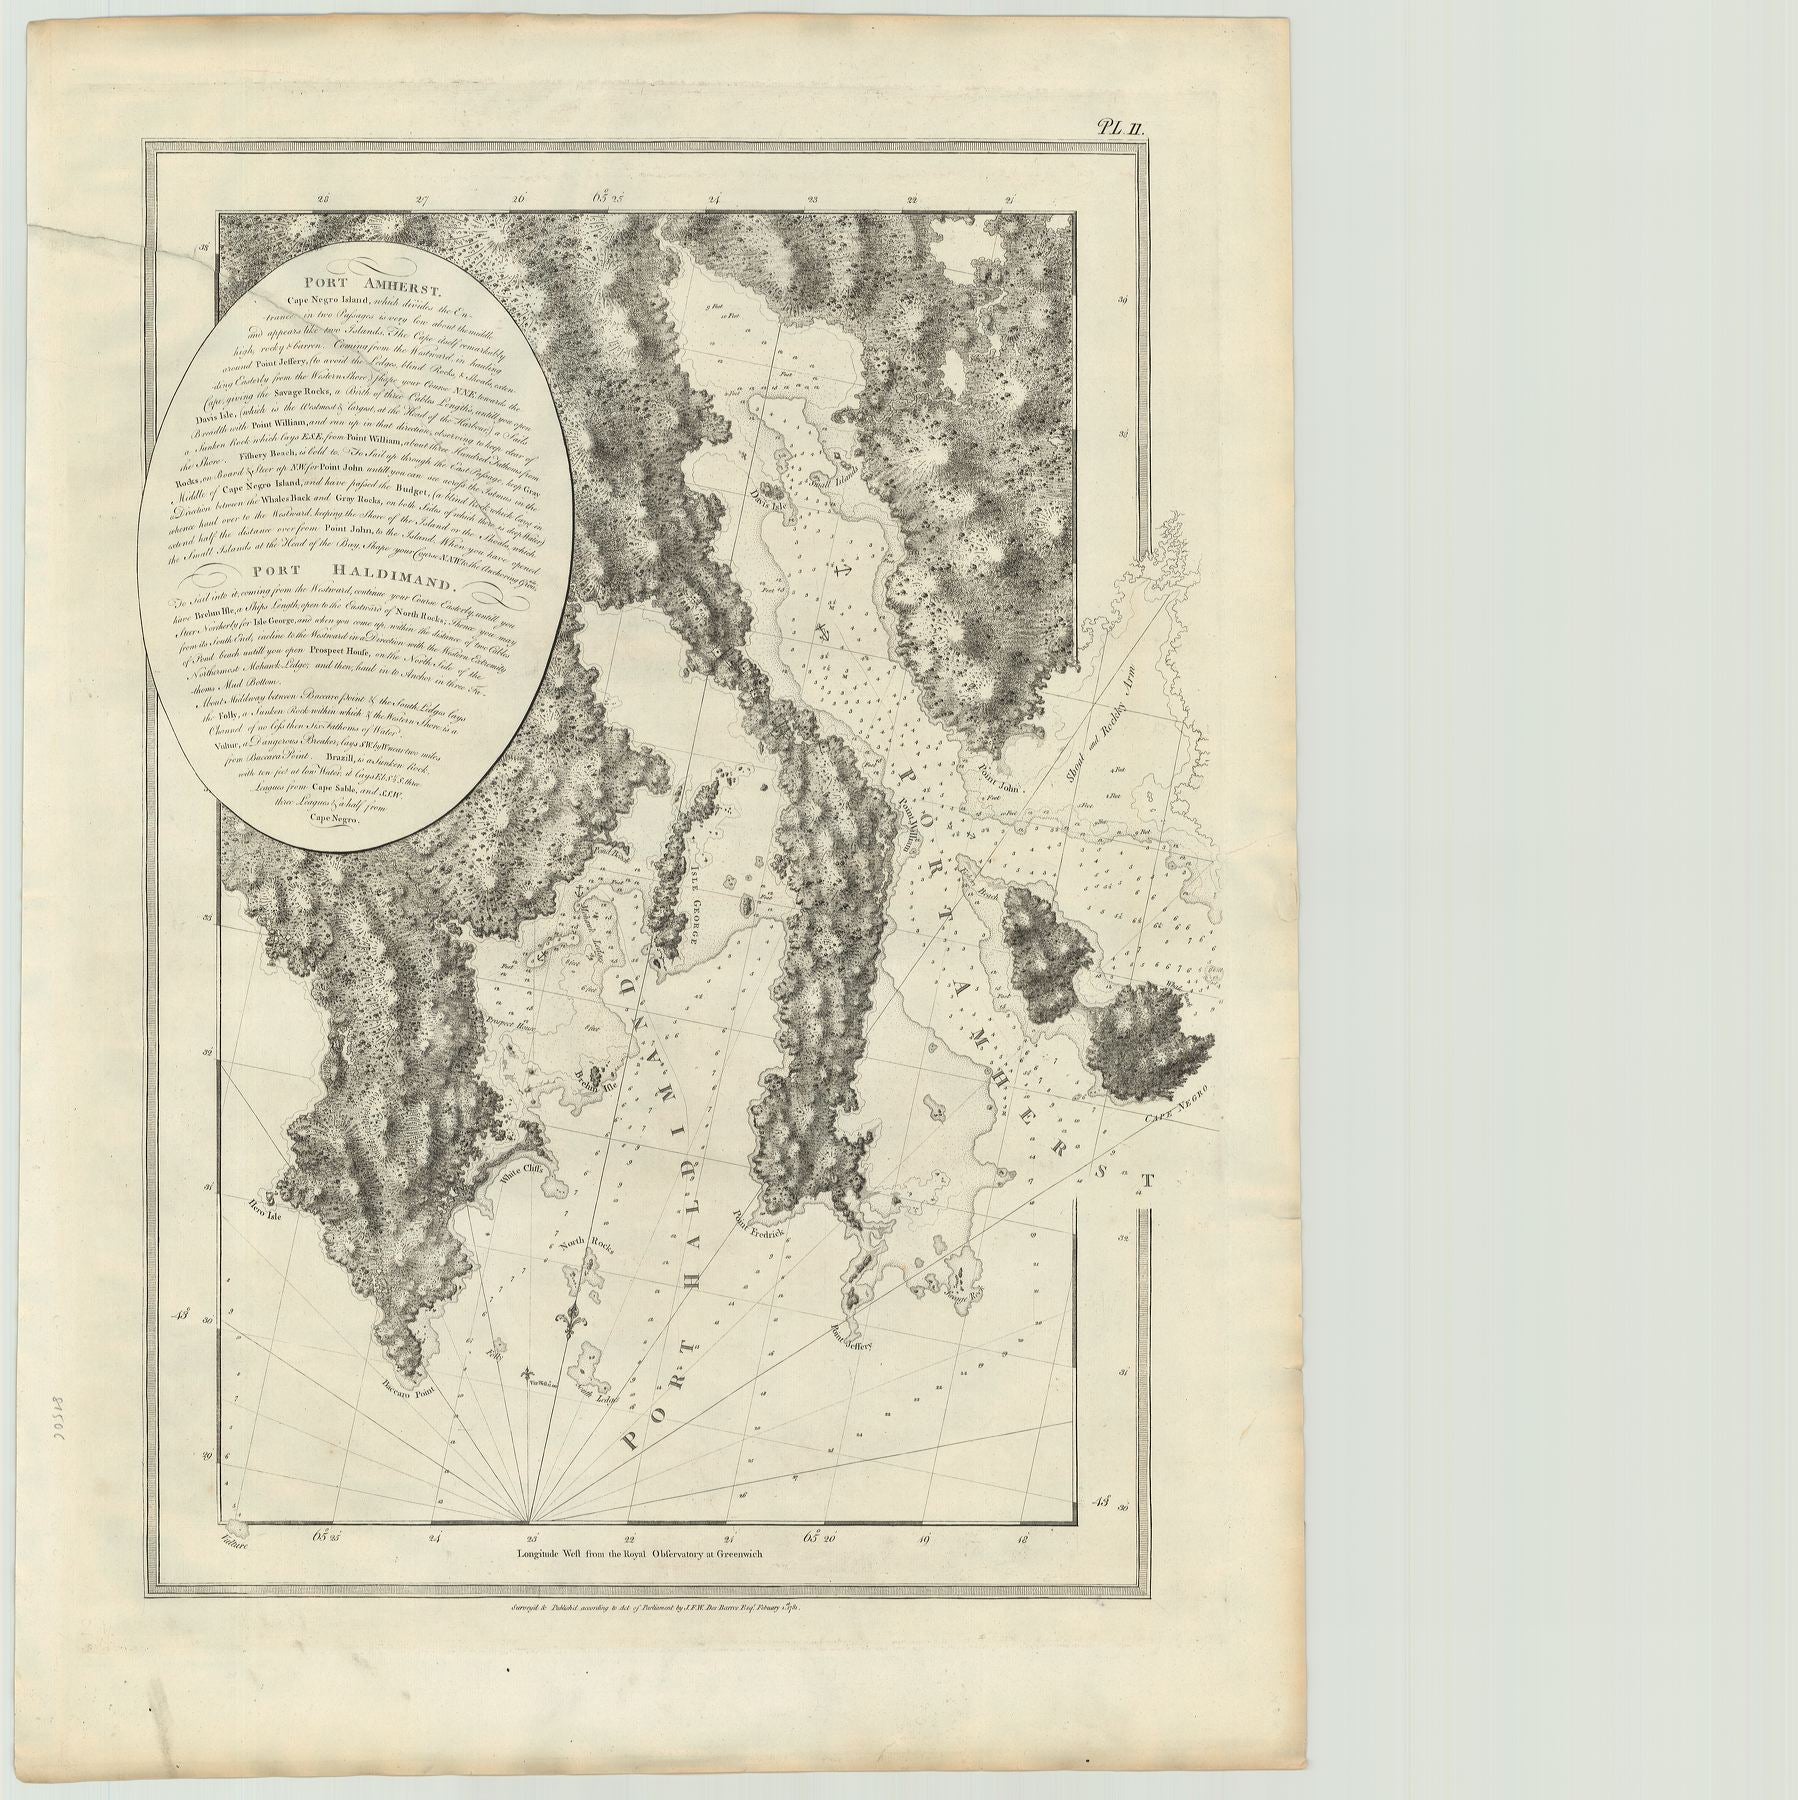 DesBarres, J.F.W.: Port Amherst … Port Haldimand. 1781